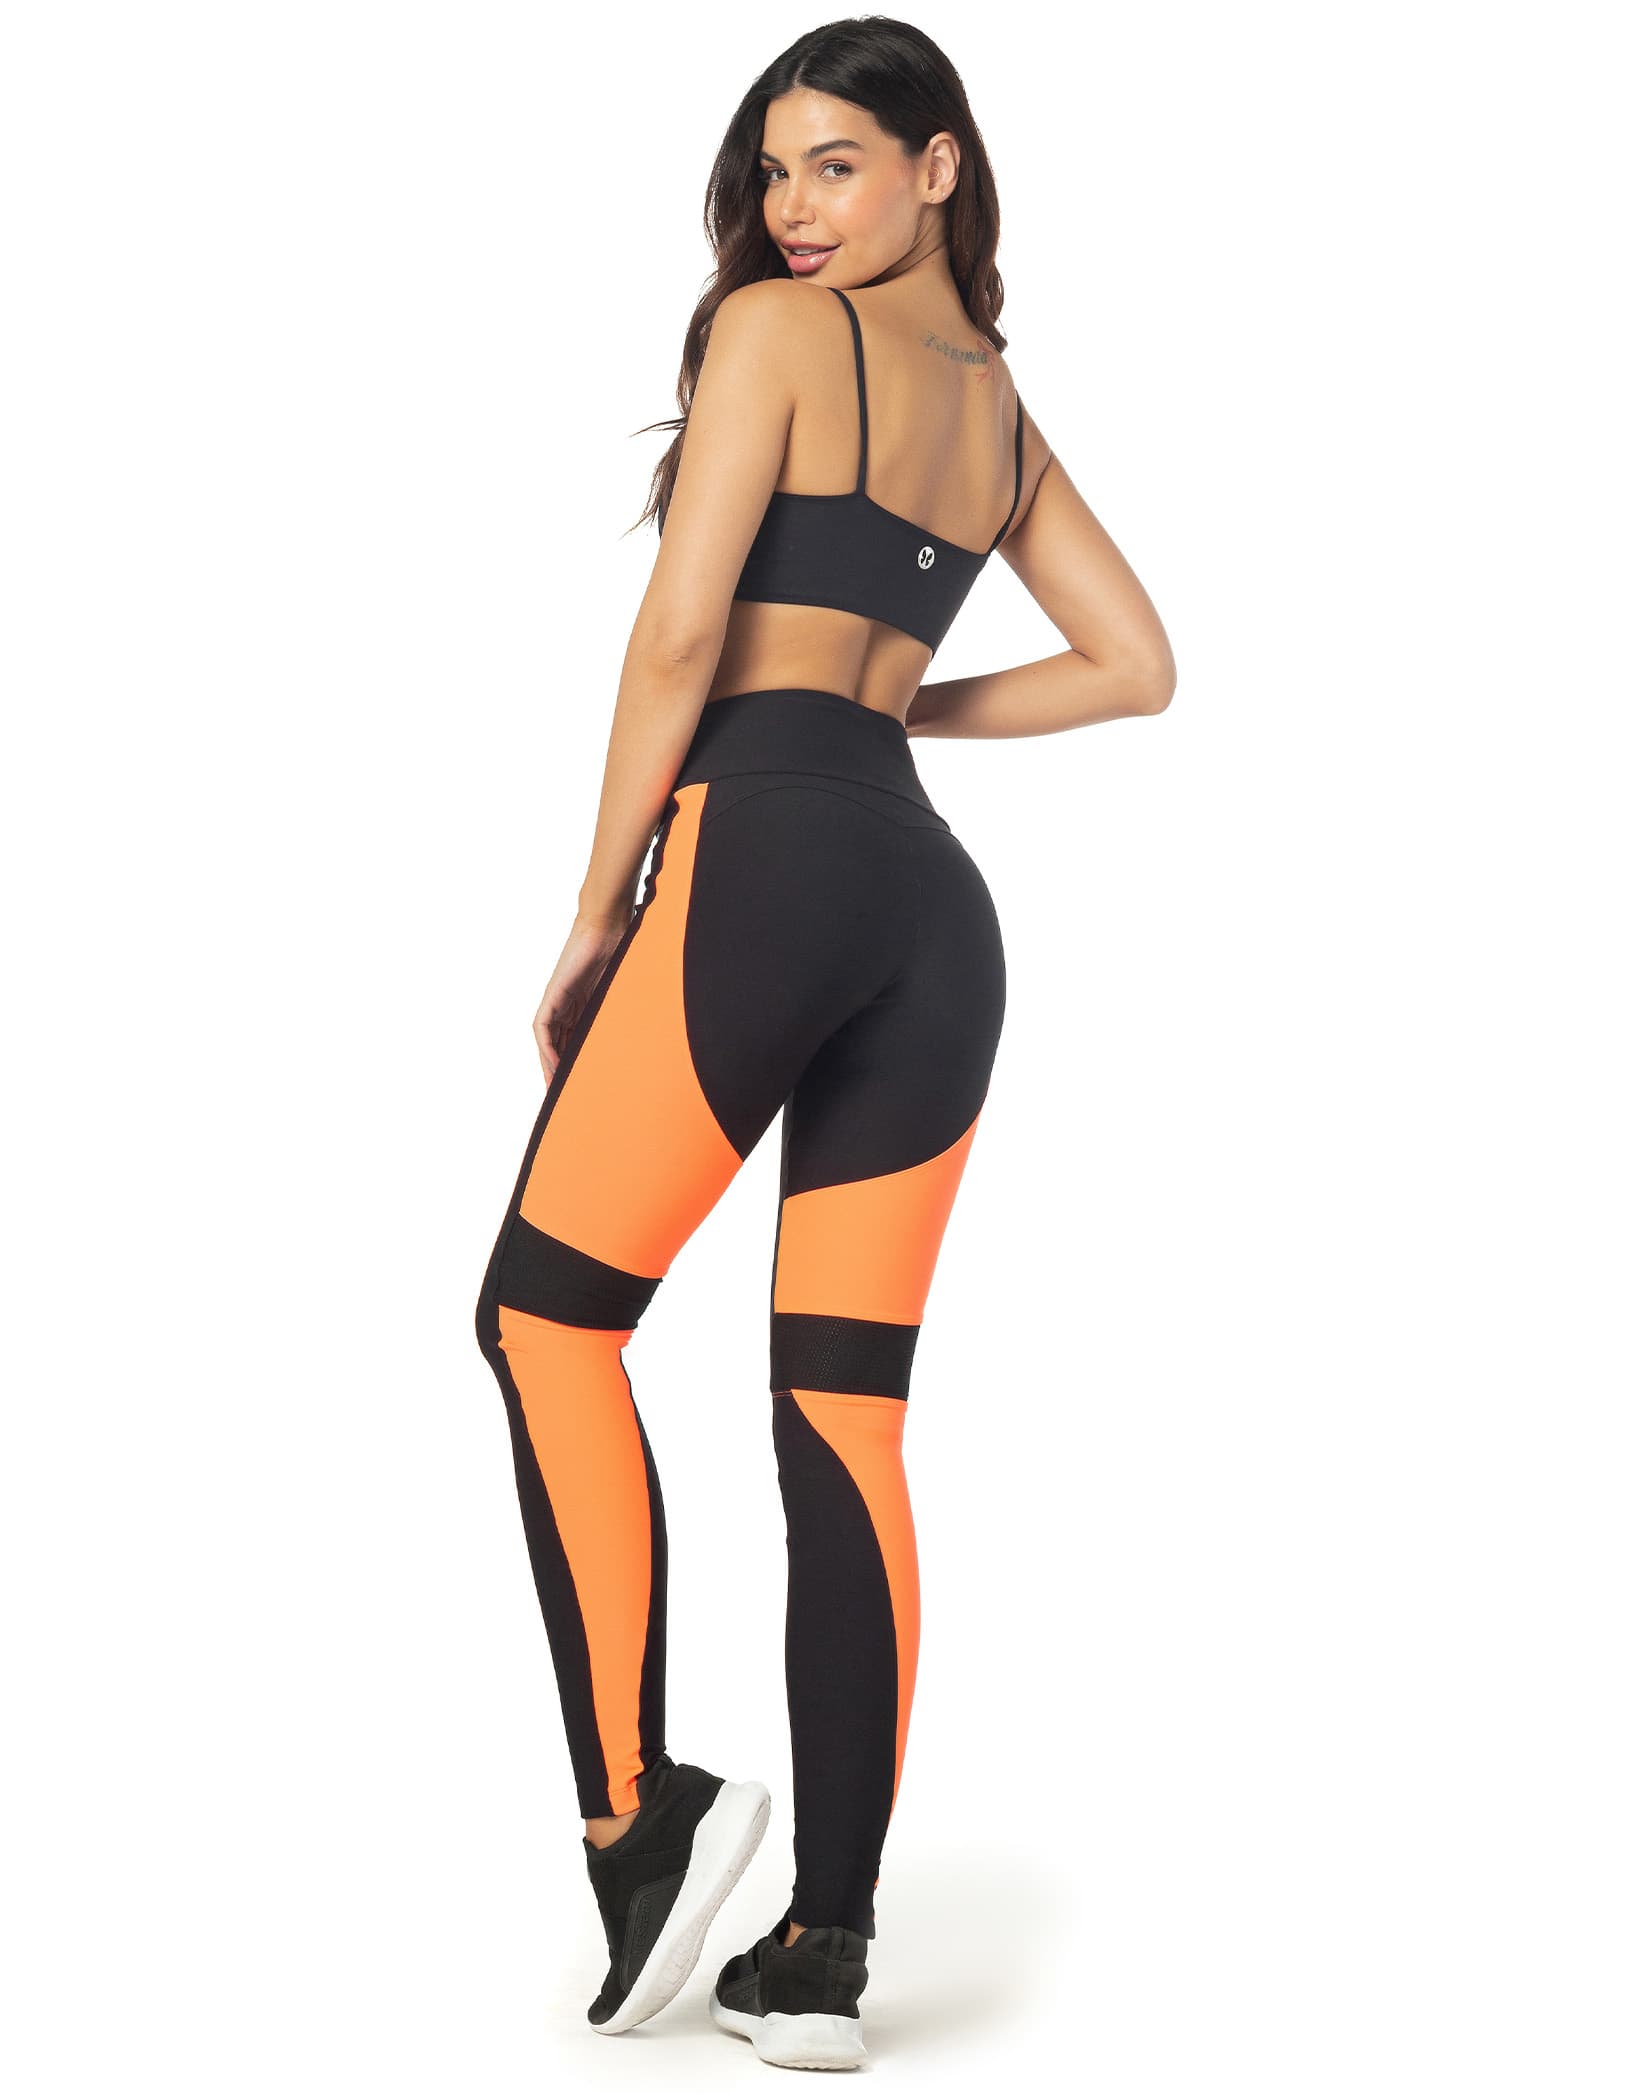 Vestem - Legging legging Liz Orange Neon - FS1227.C0002